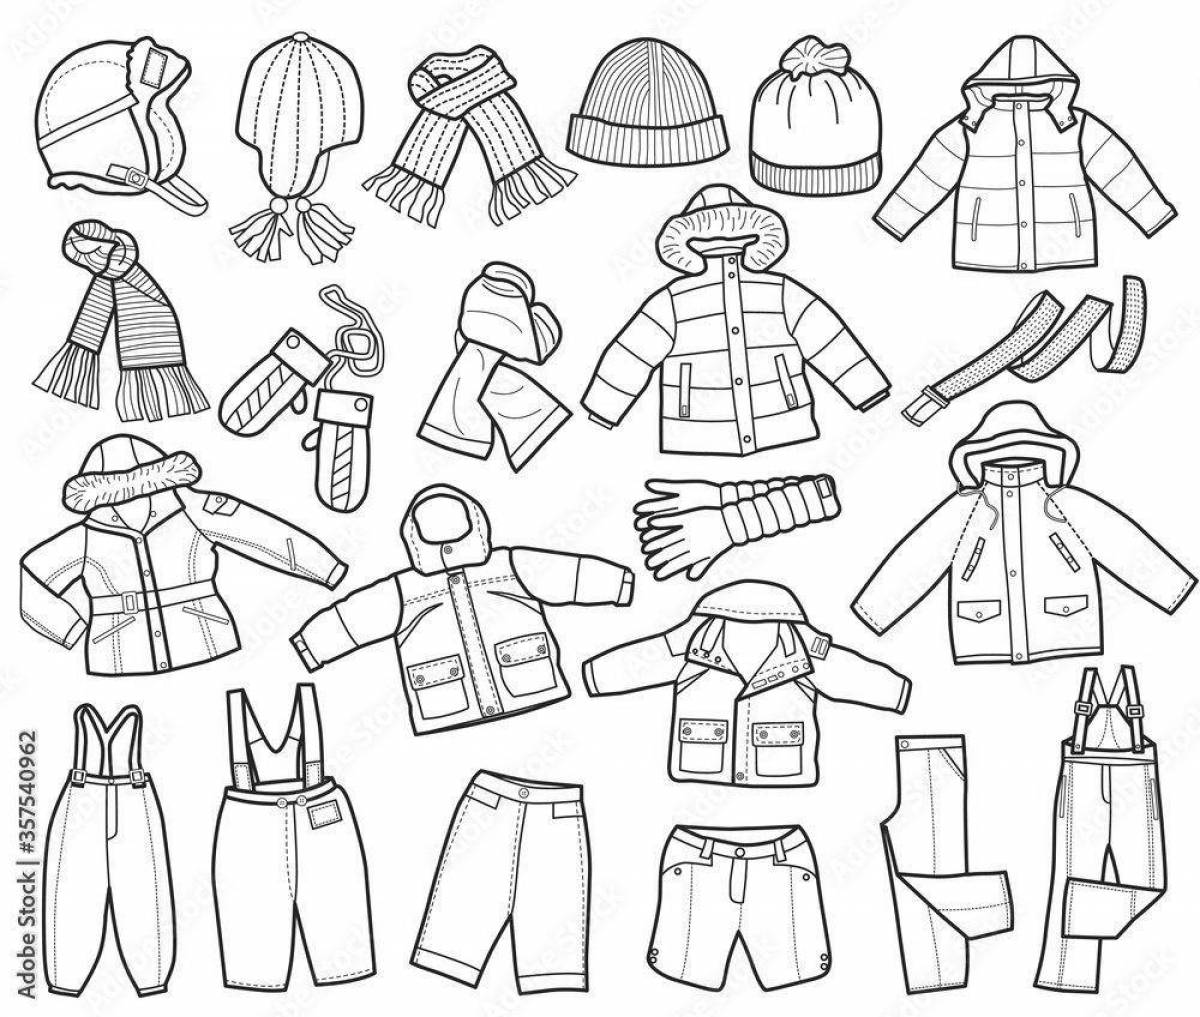 Увлекательная раскраска зимней одежды для детей 5-6 лет